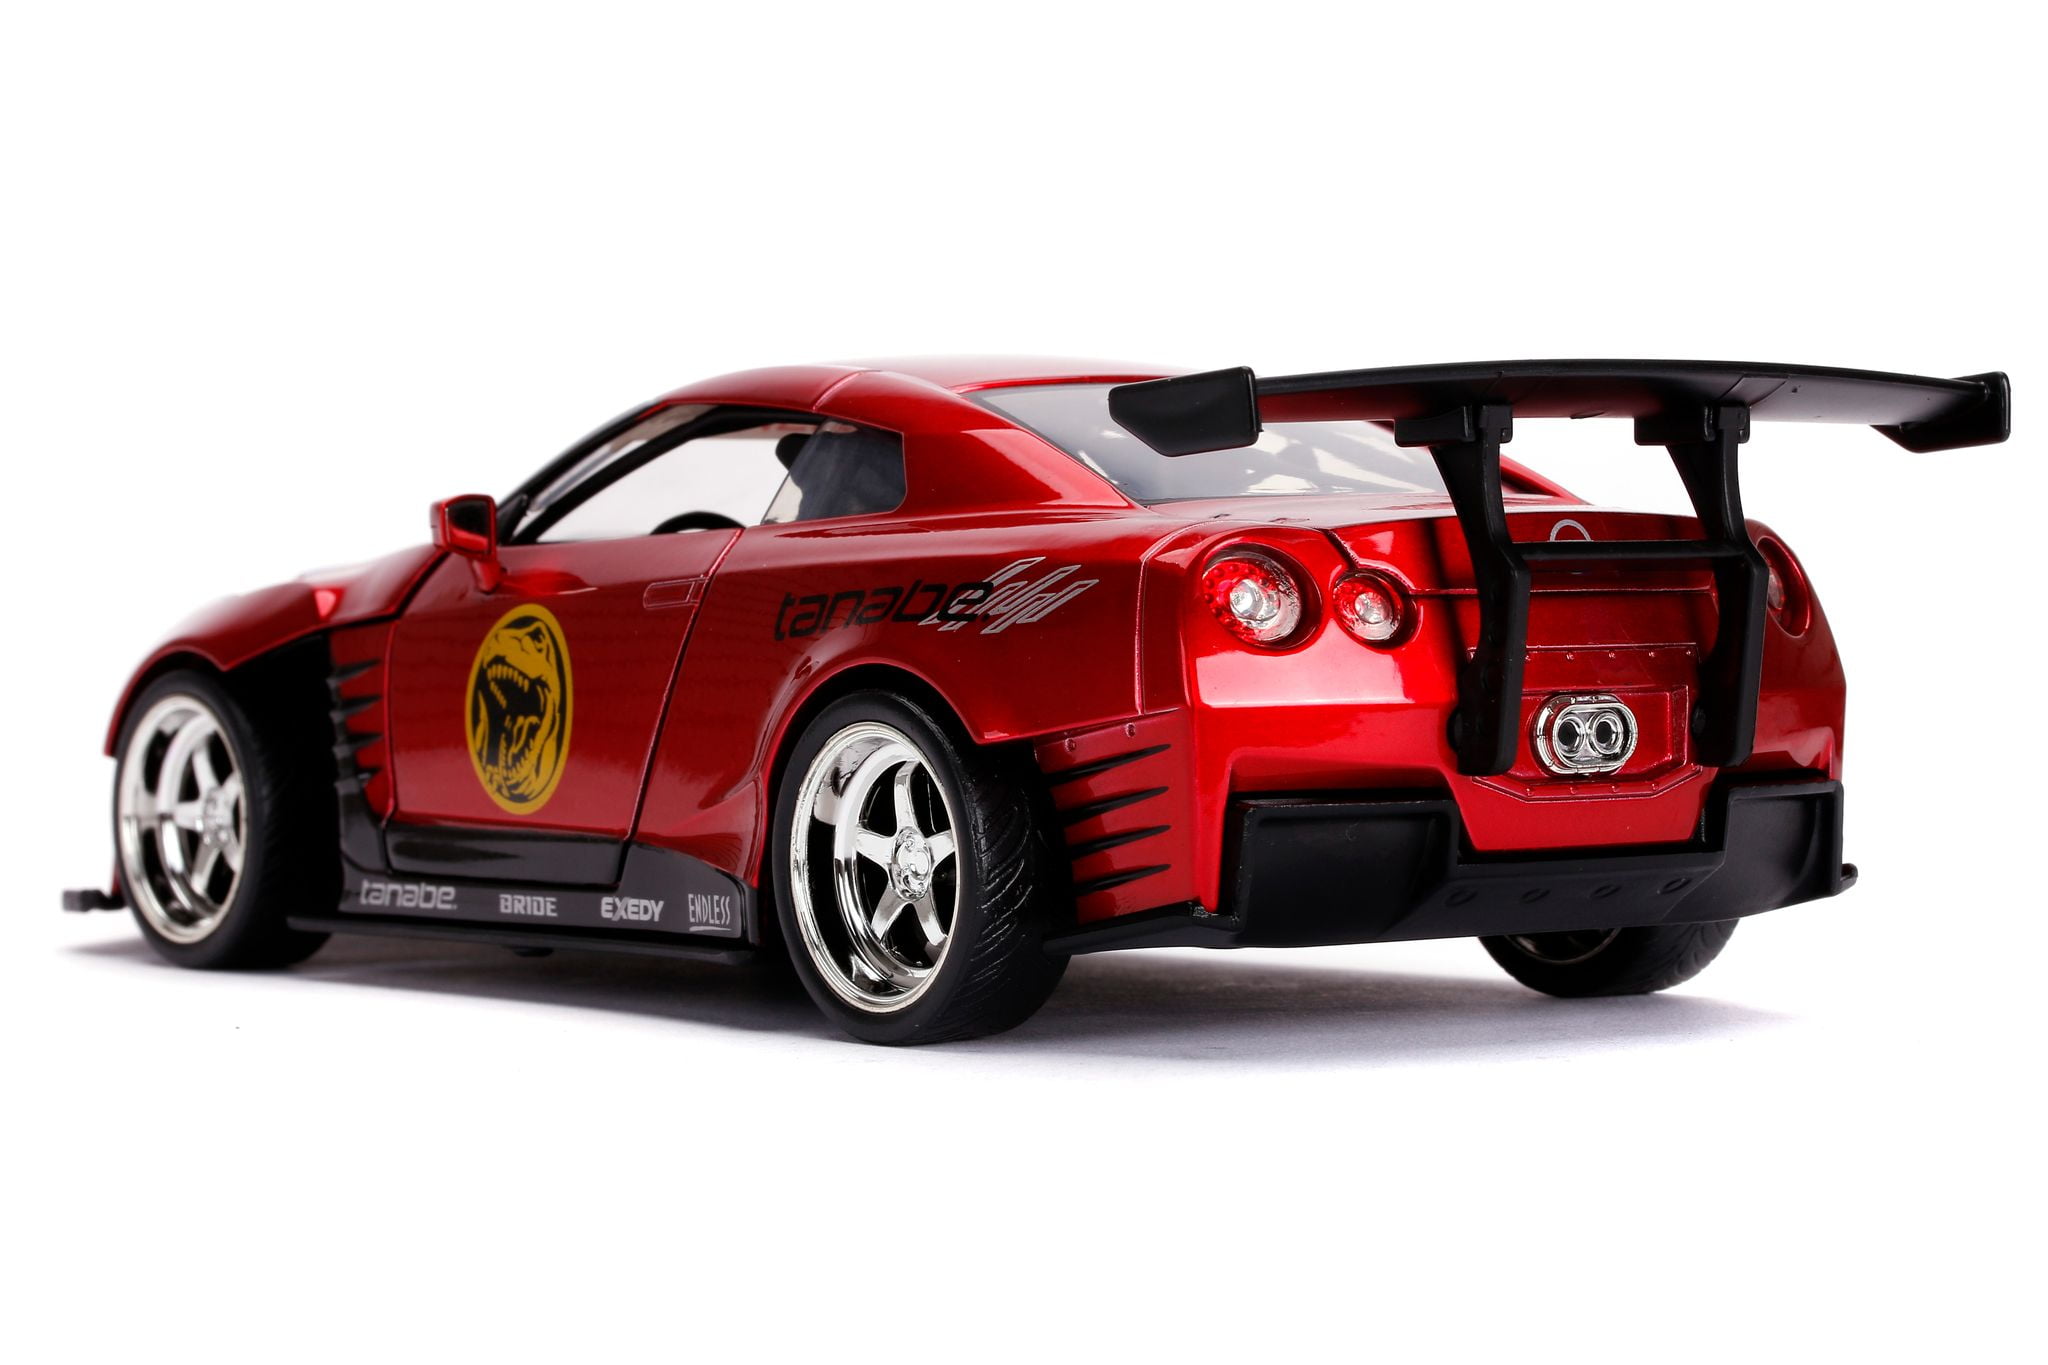 Türen zum Öffnen R35 Jada Toys 253255025 Maßstab 1:24 2009 Nissan GT-R Spielzeugauto rot inkl Die-cast Power Rangers Figur